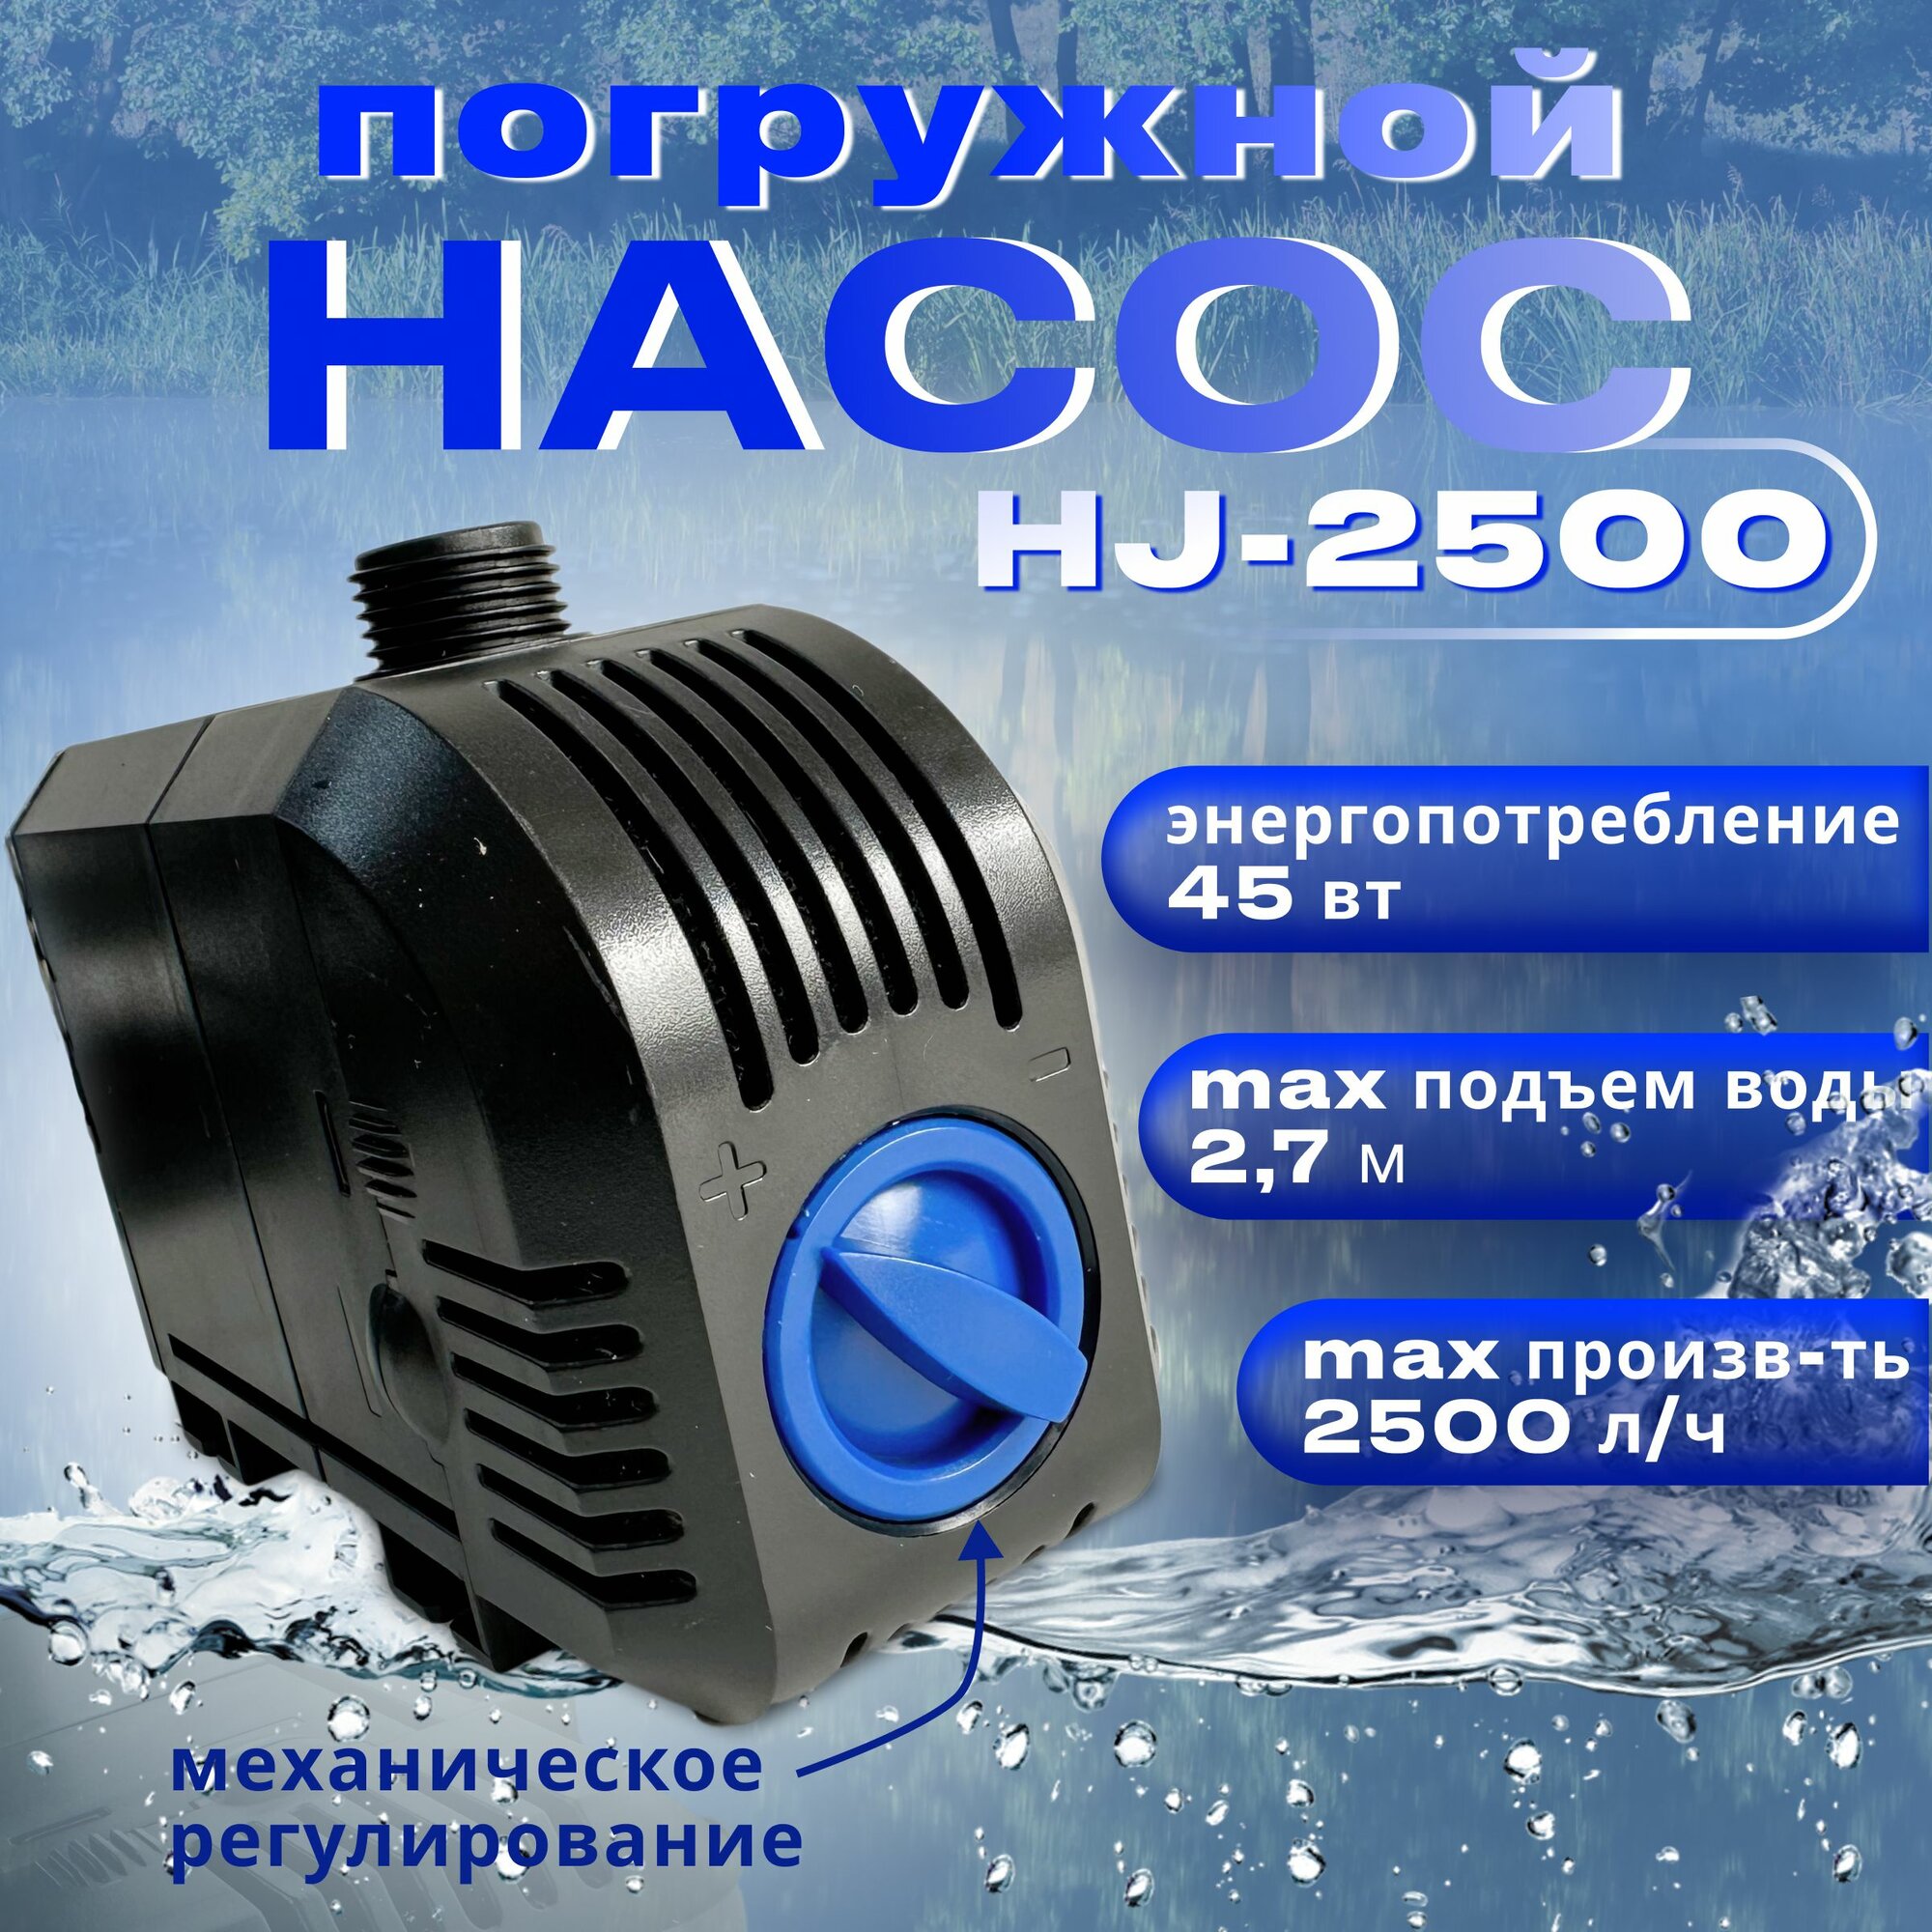 Насос для фонтана регулируемый SunSun HJ 2500 производительность 2500 л/час длина кабеля 25м